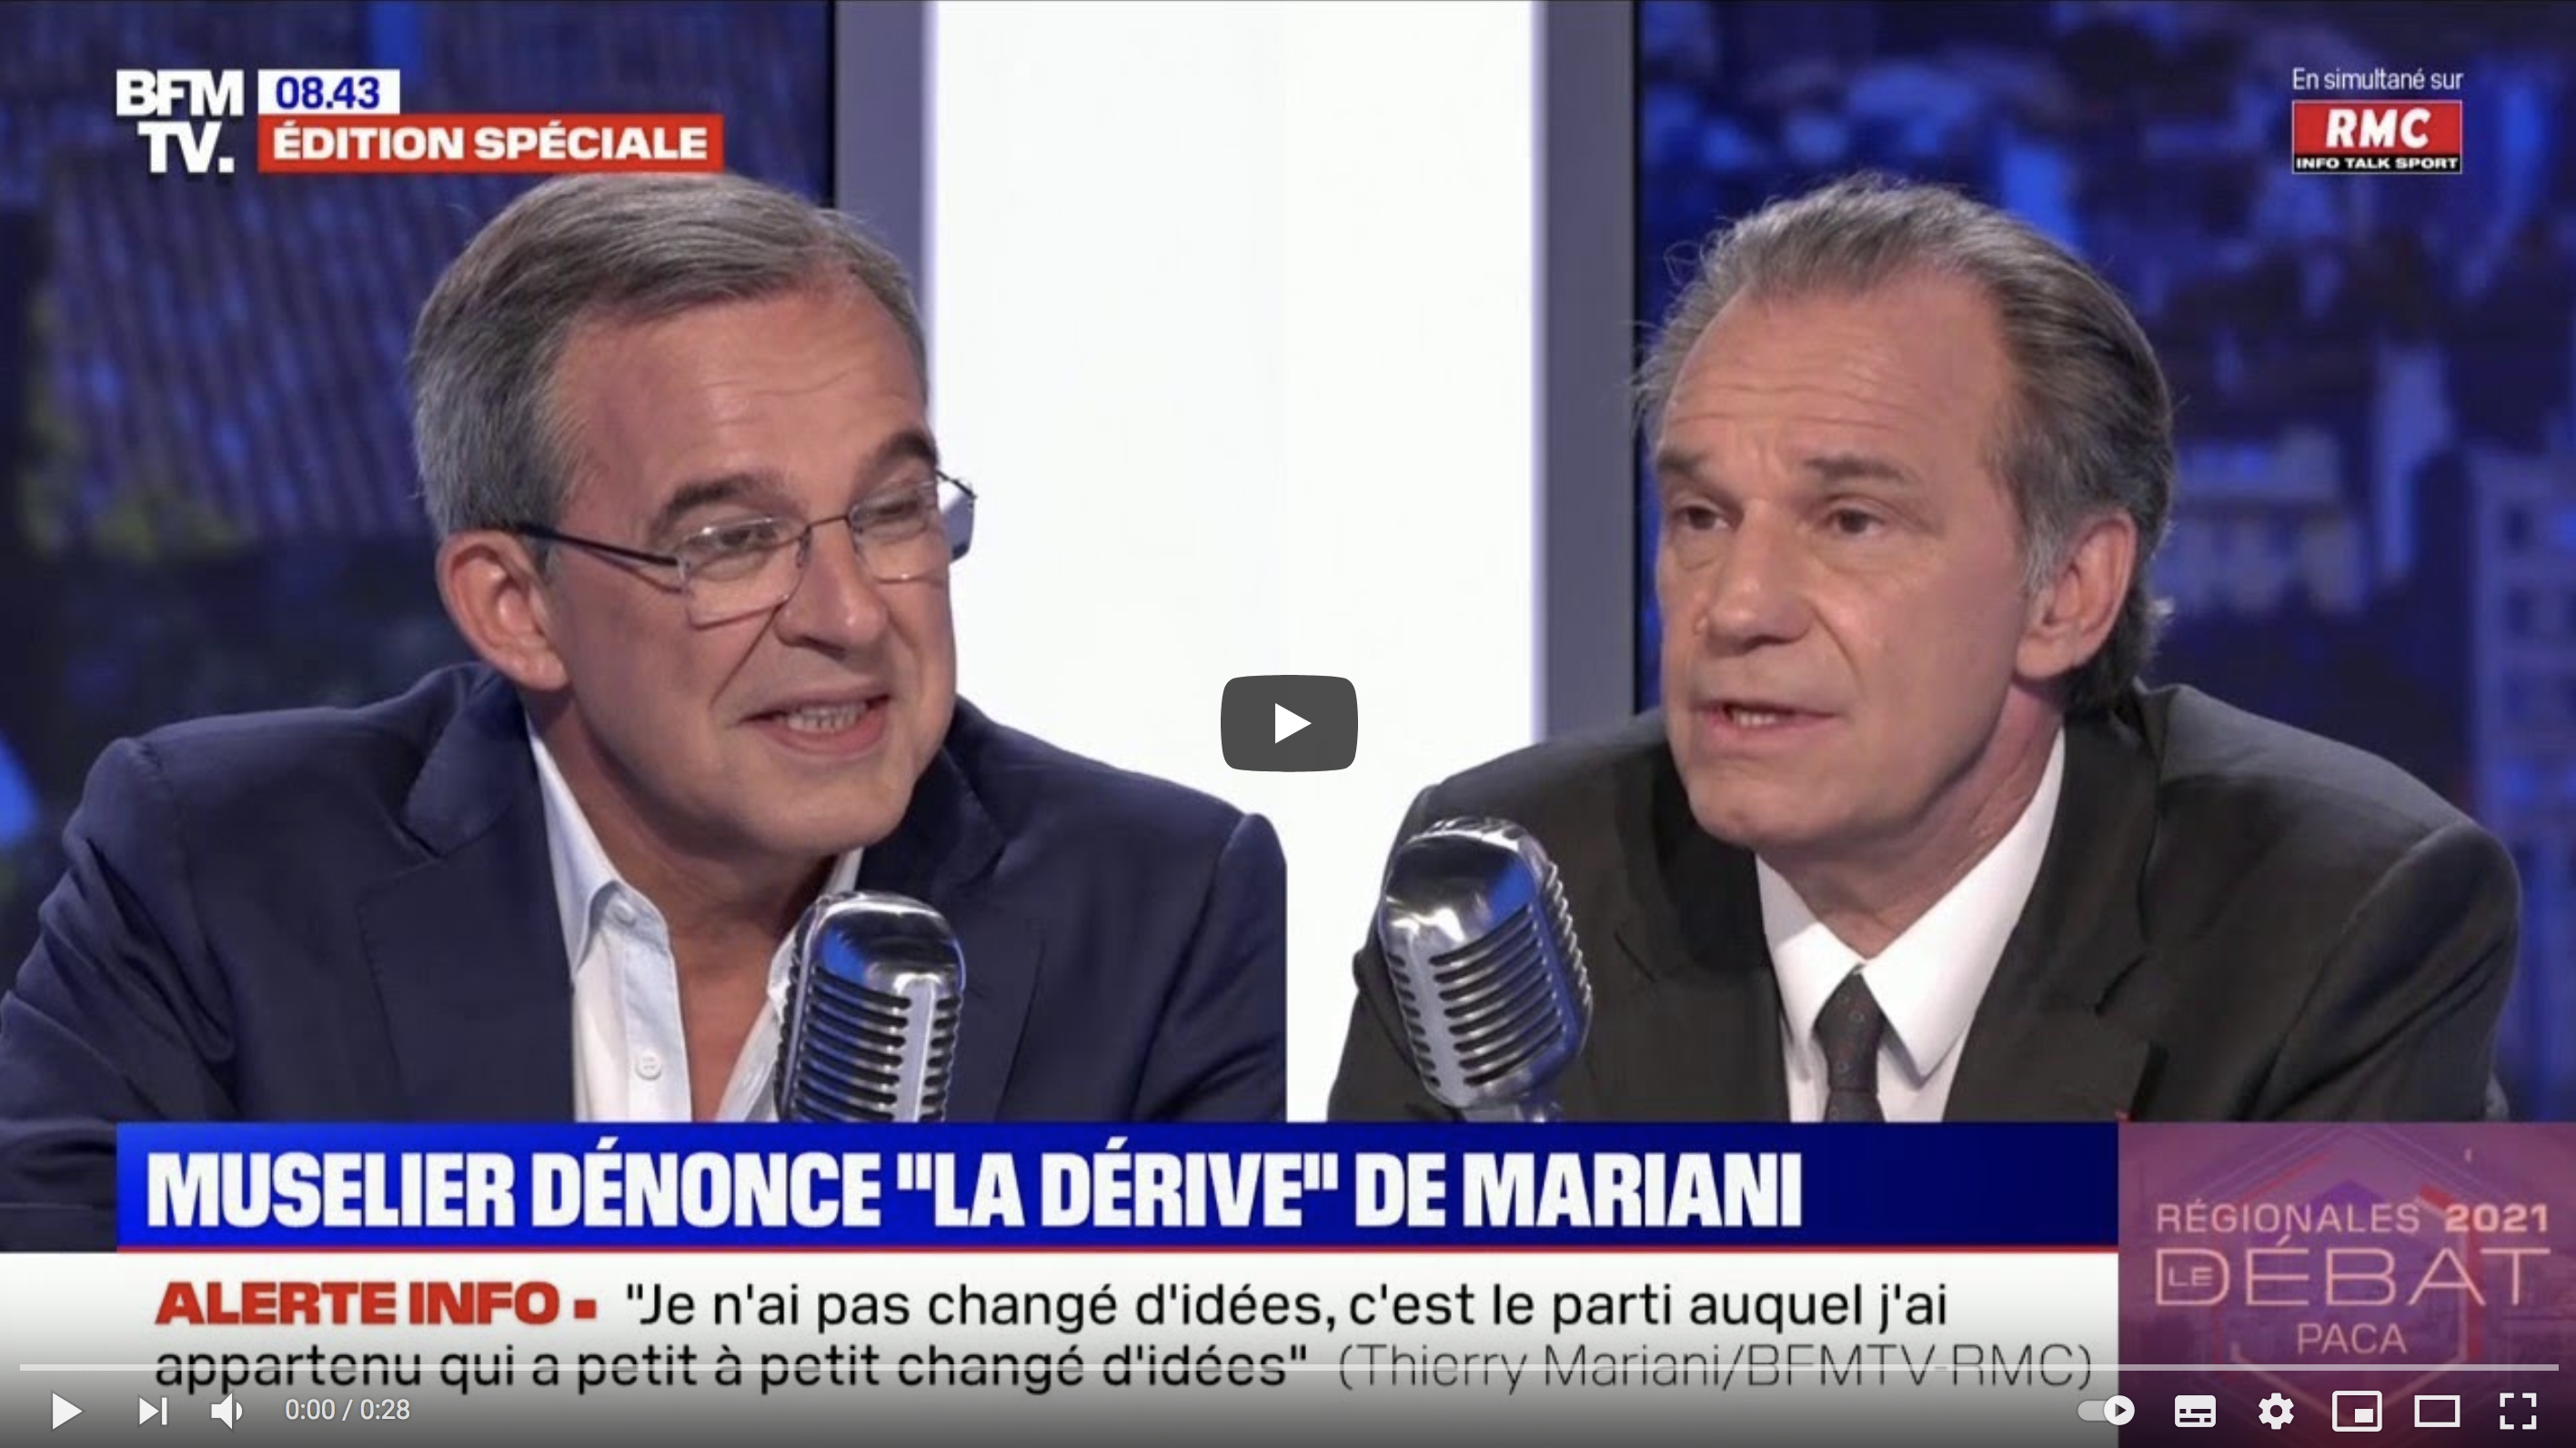 Thierry Mariani à Renaud Muselier : “Vous ressemblez de plus en plus à Christian Estrosi” (VIDÉO)